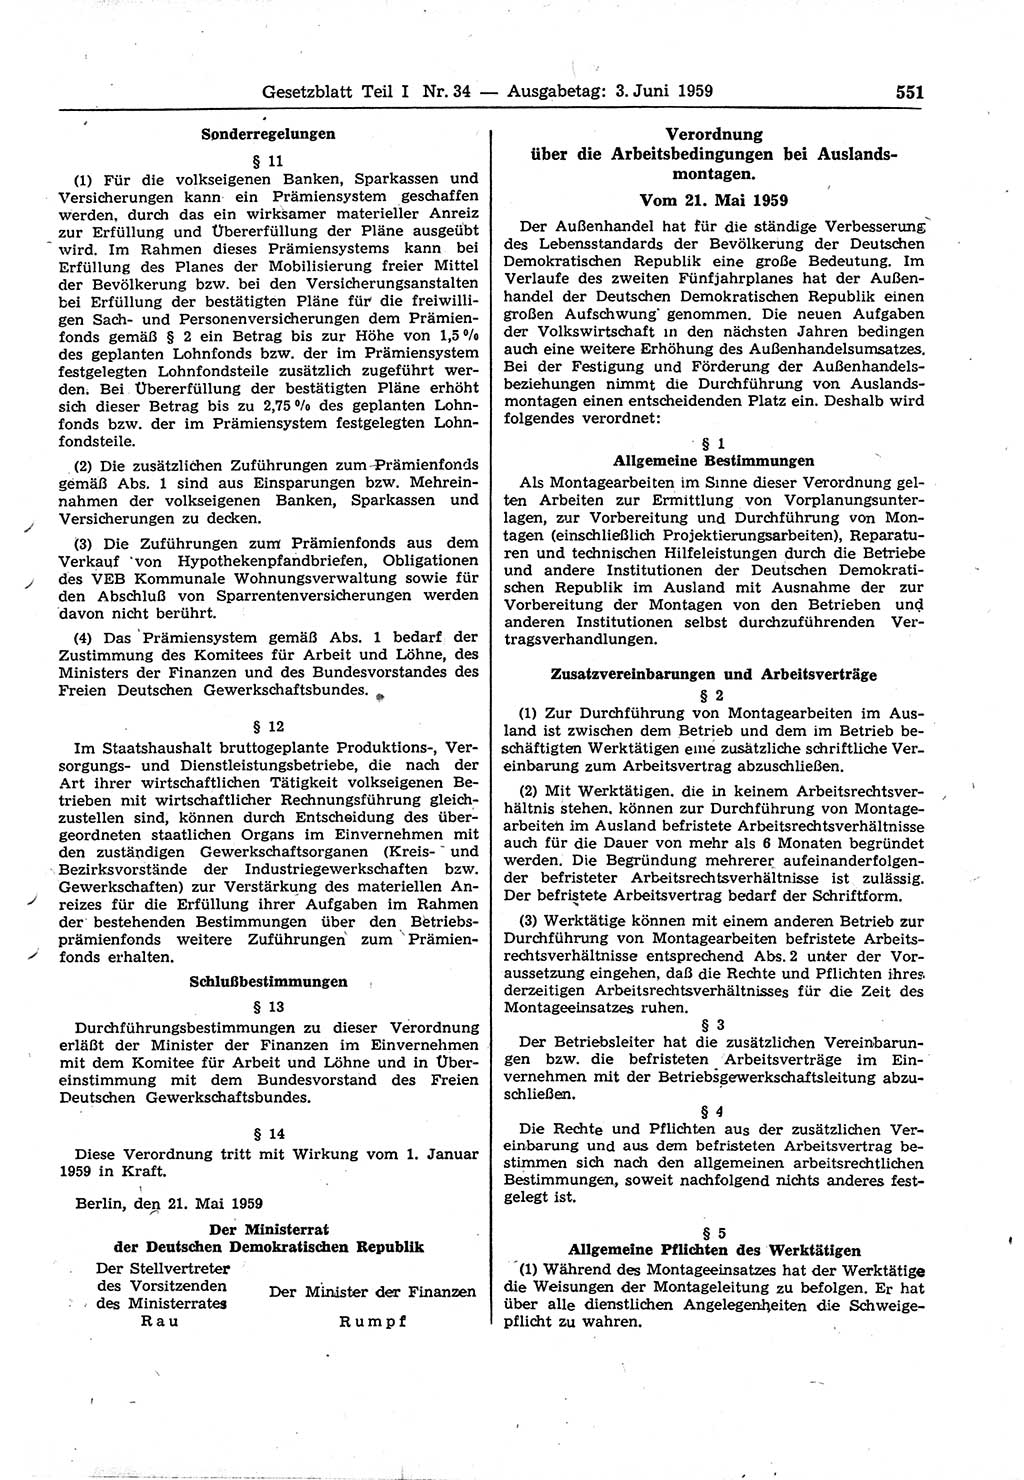 Gesetzblatt (GBl.) der Deutschen Demokratischen Republik (DDR) Teil â… 1959, Seite 551 (GBl. DDR â… 1959, S. 551)